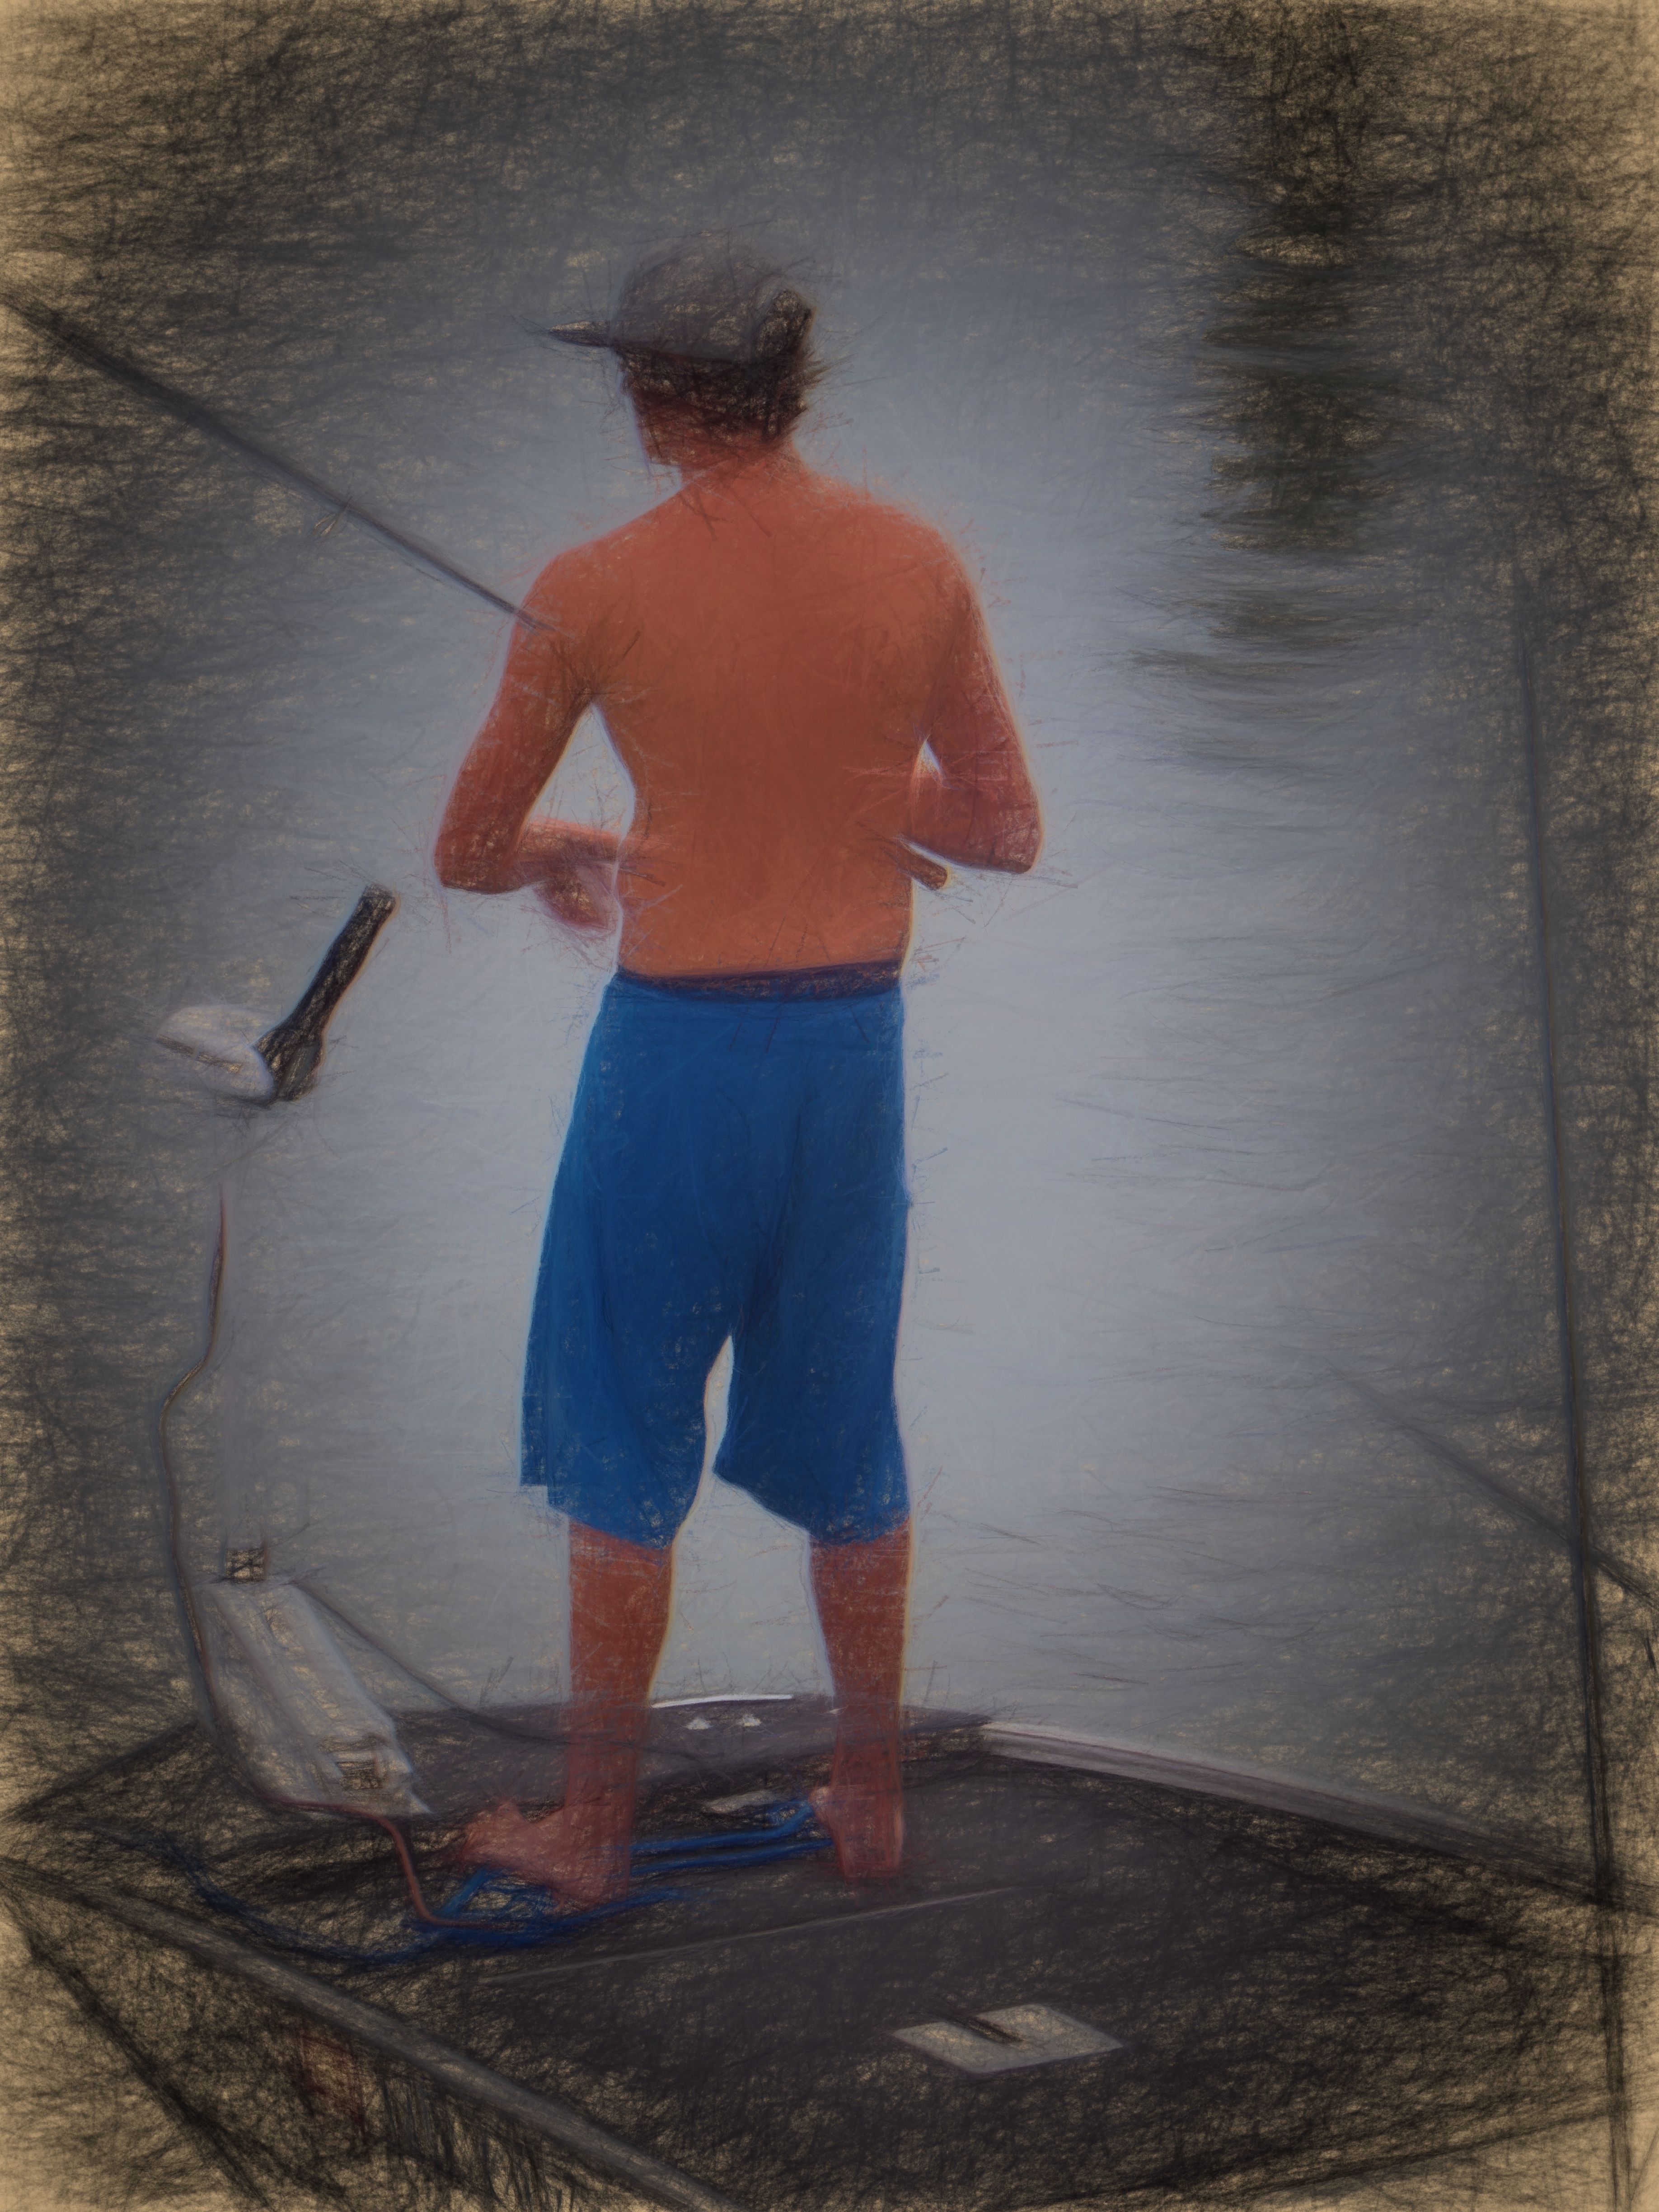 fishing boy